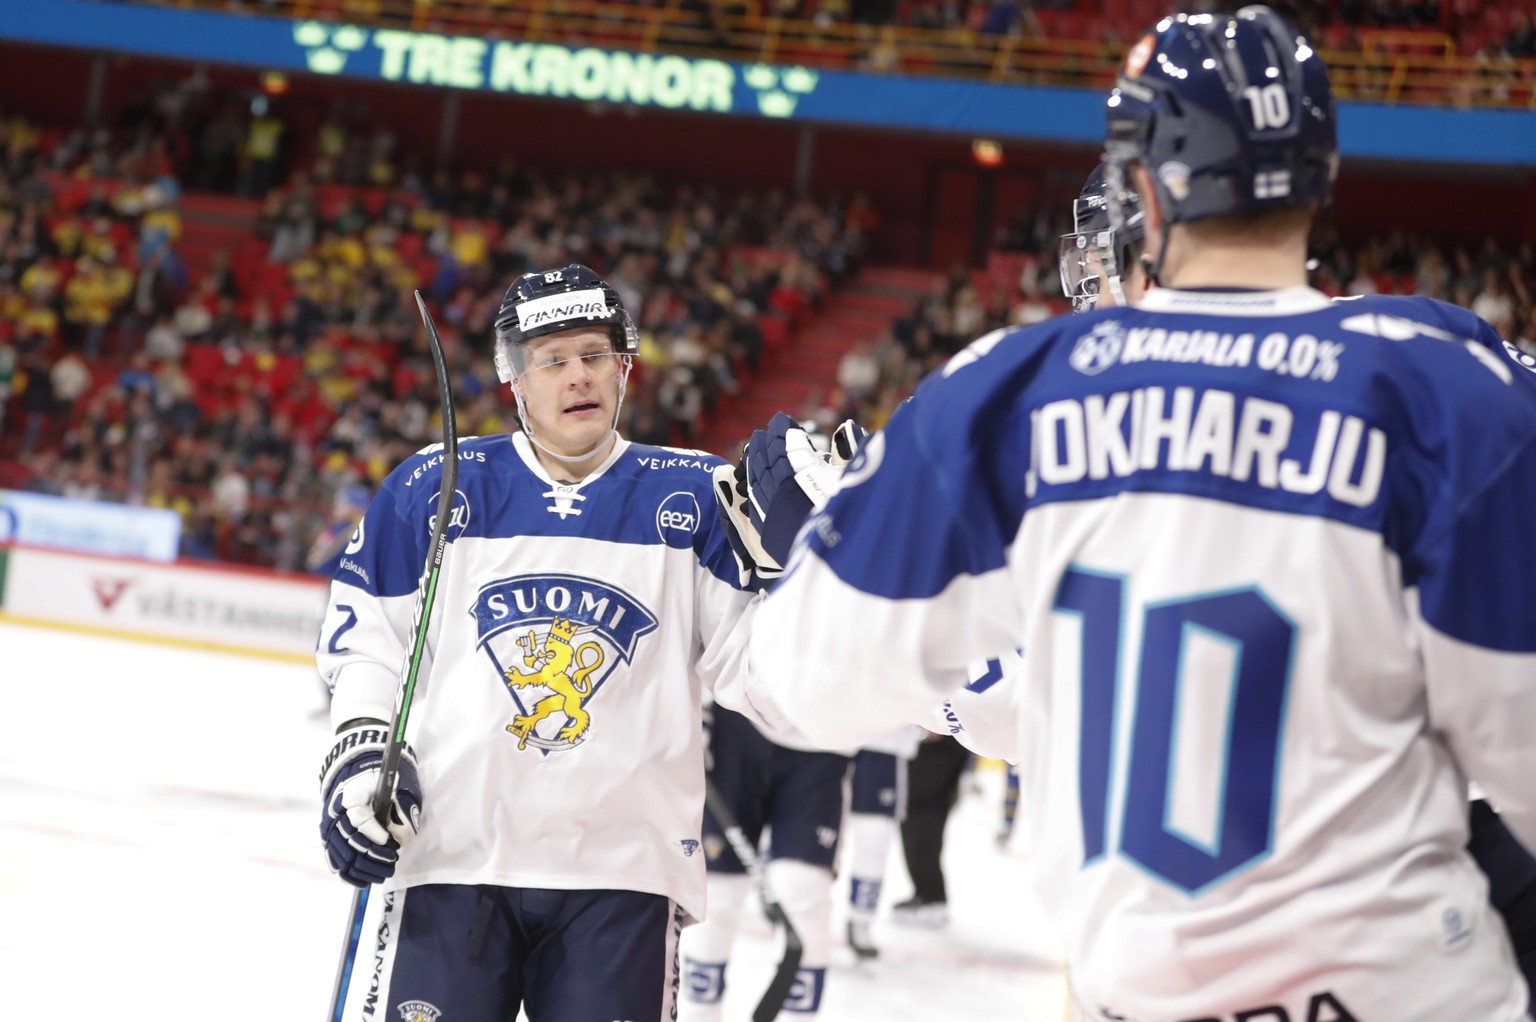 Finnland setzt mit Harri Pesonen und Co. wieder auf viel National-League-Power.